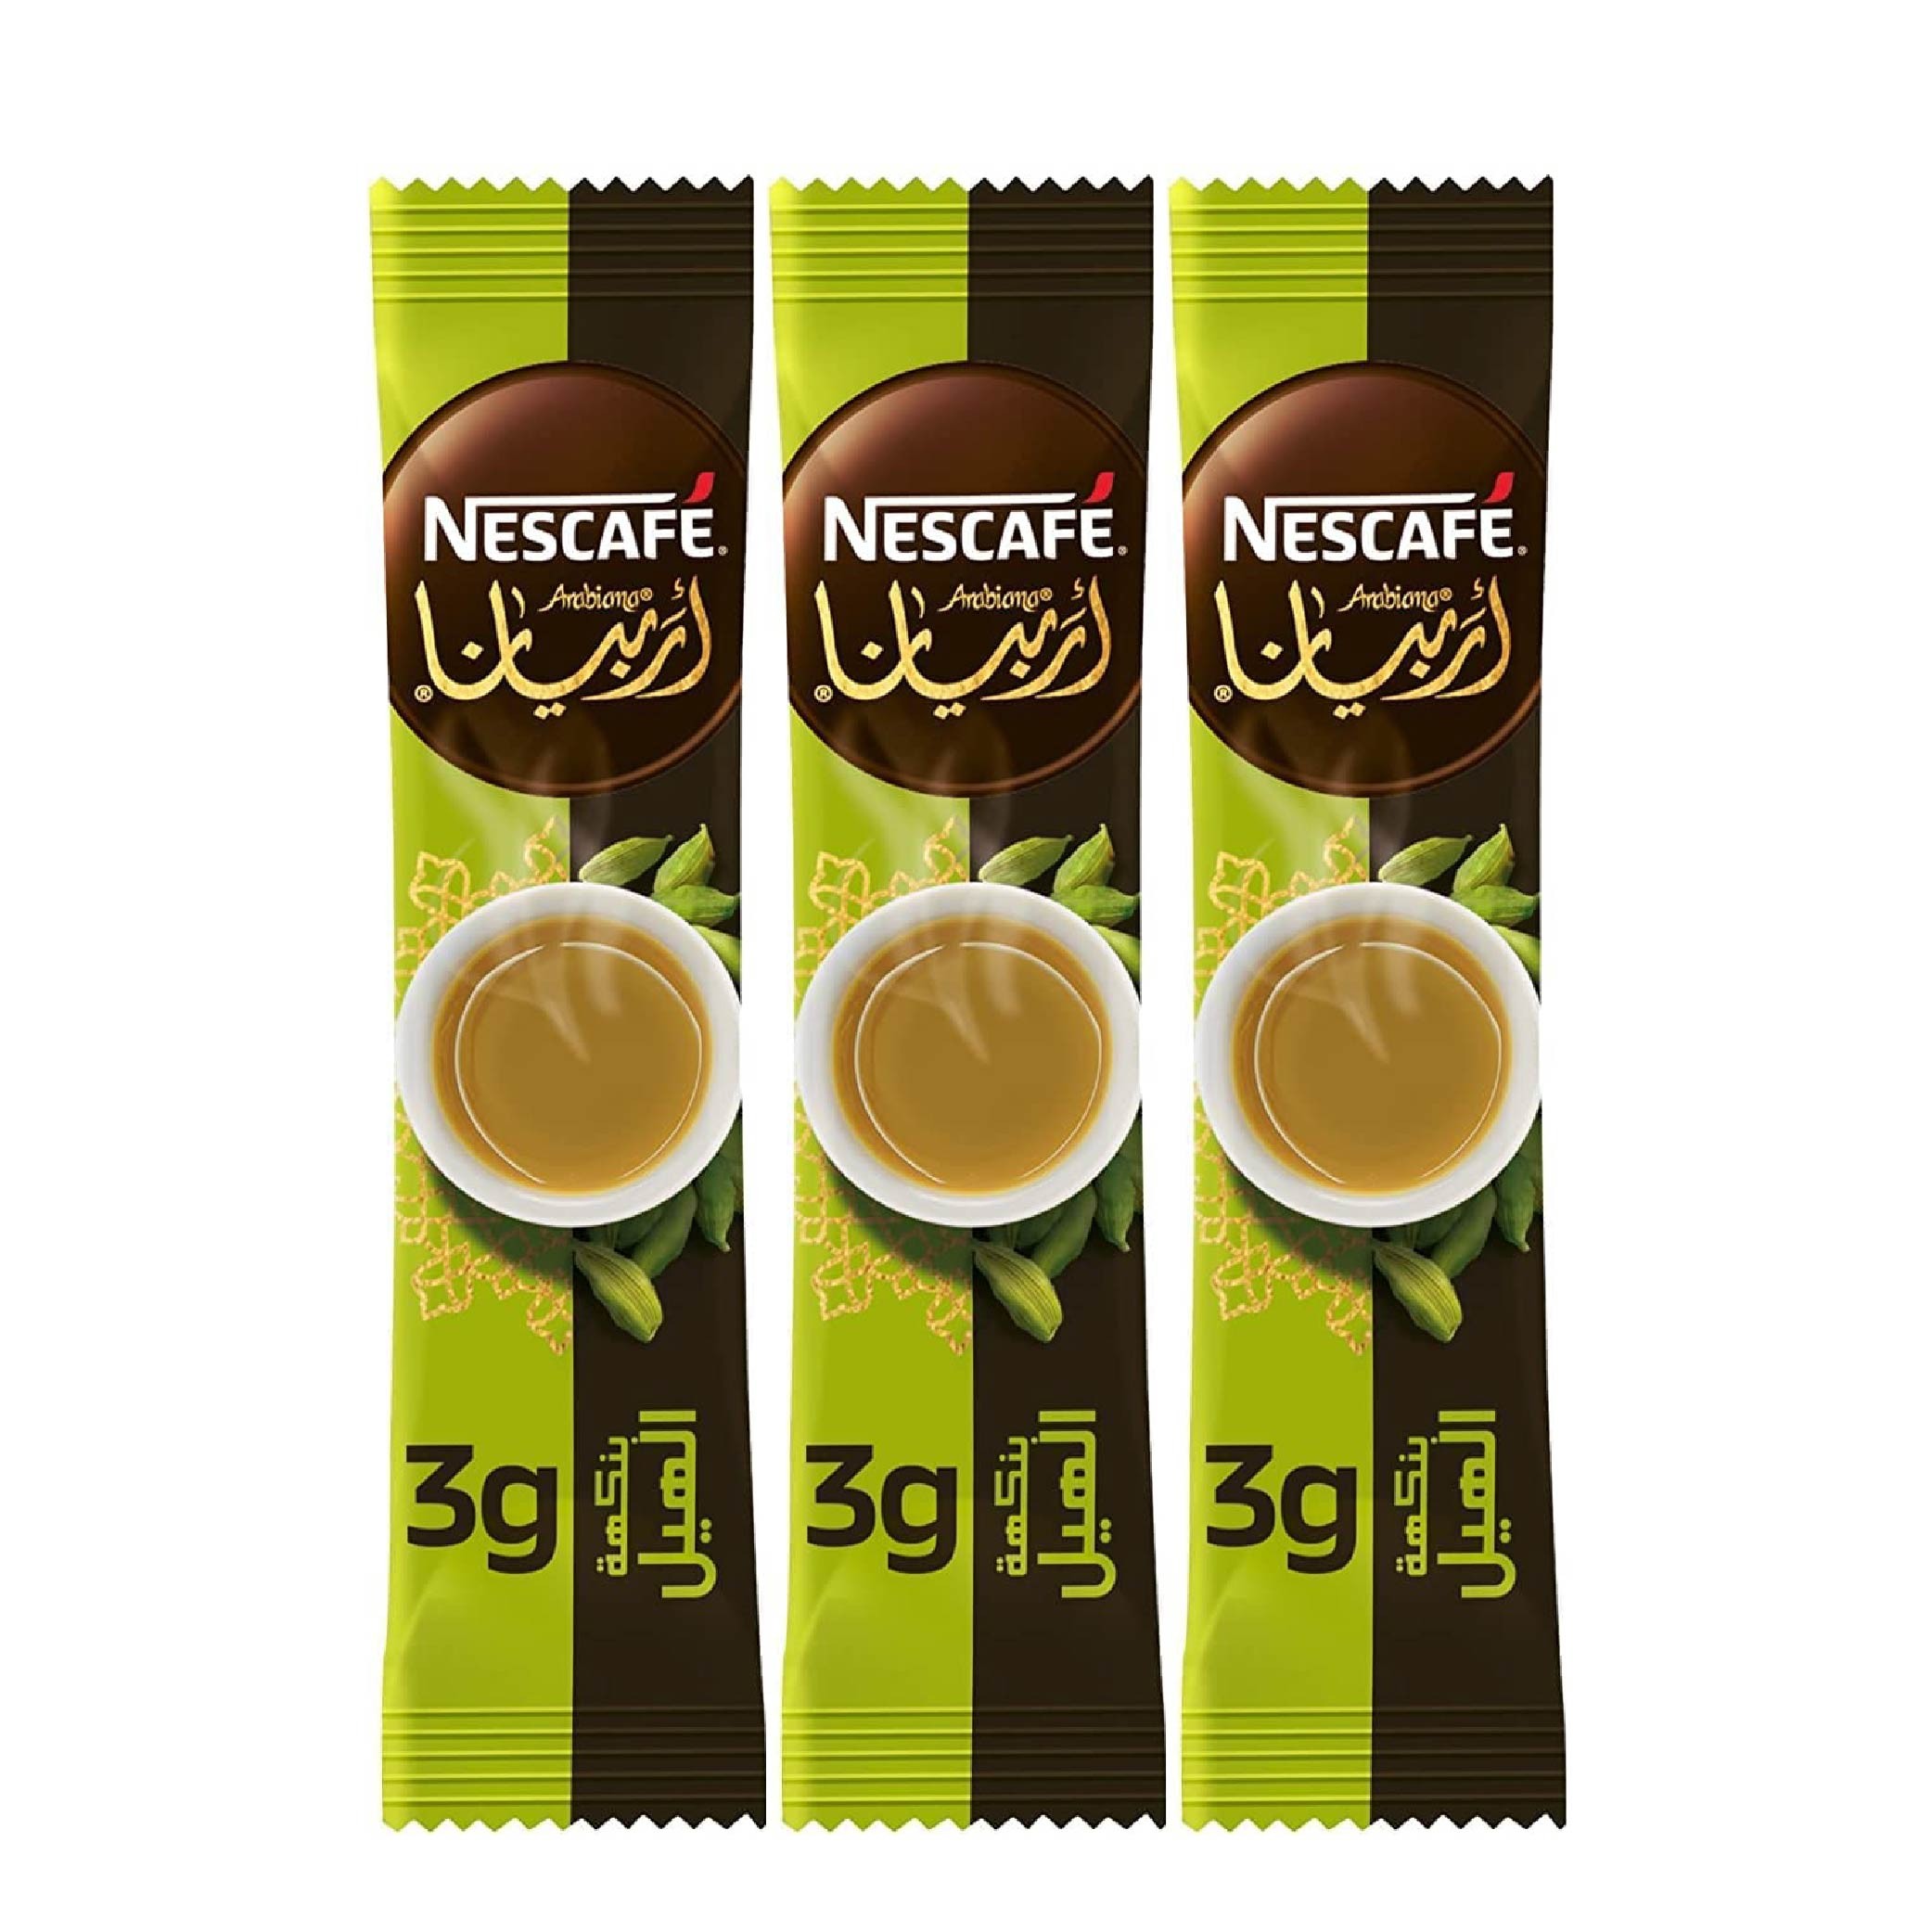 NESTLE NESCAFE CINNAMON FLAVORED ARABIC COFFEE 3 STICKS